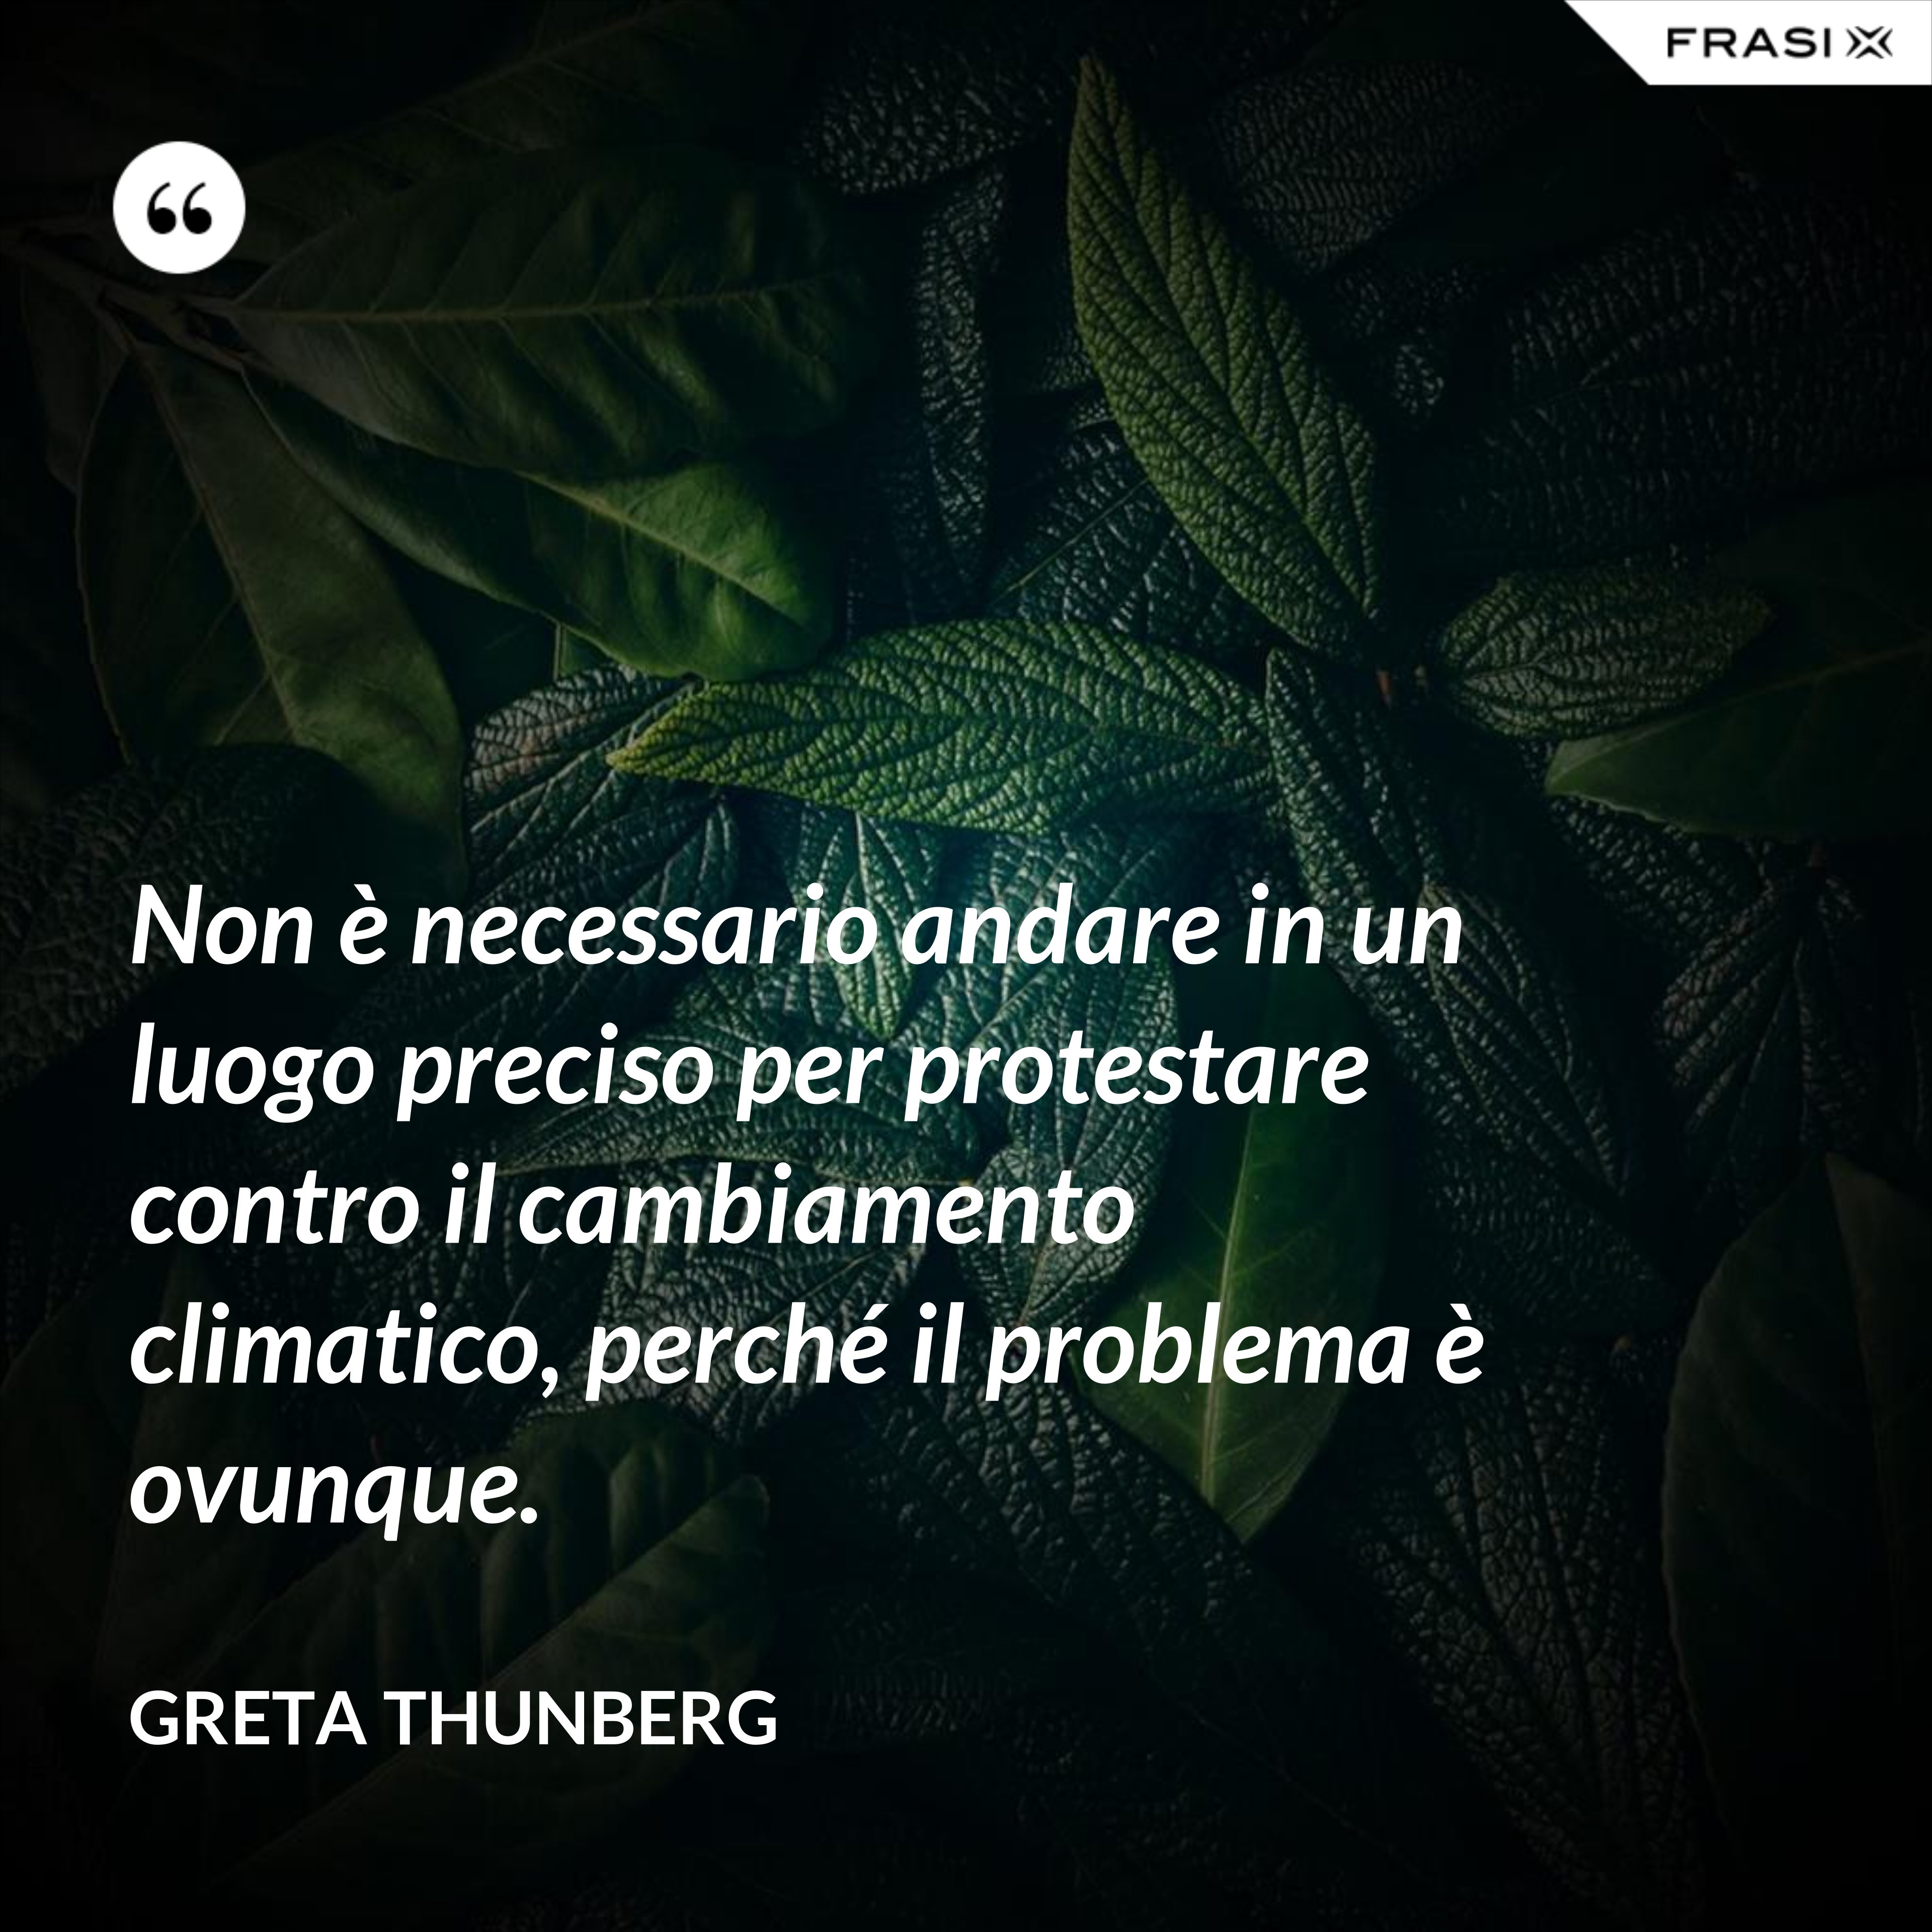 Non è necessario andare in un luogo preciso per protestare contro il cambiamento climatico, perché il problema è ovunque. - Greta Thunberg